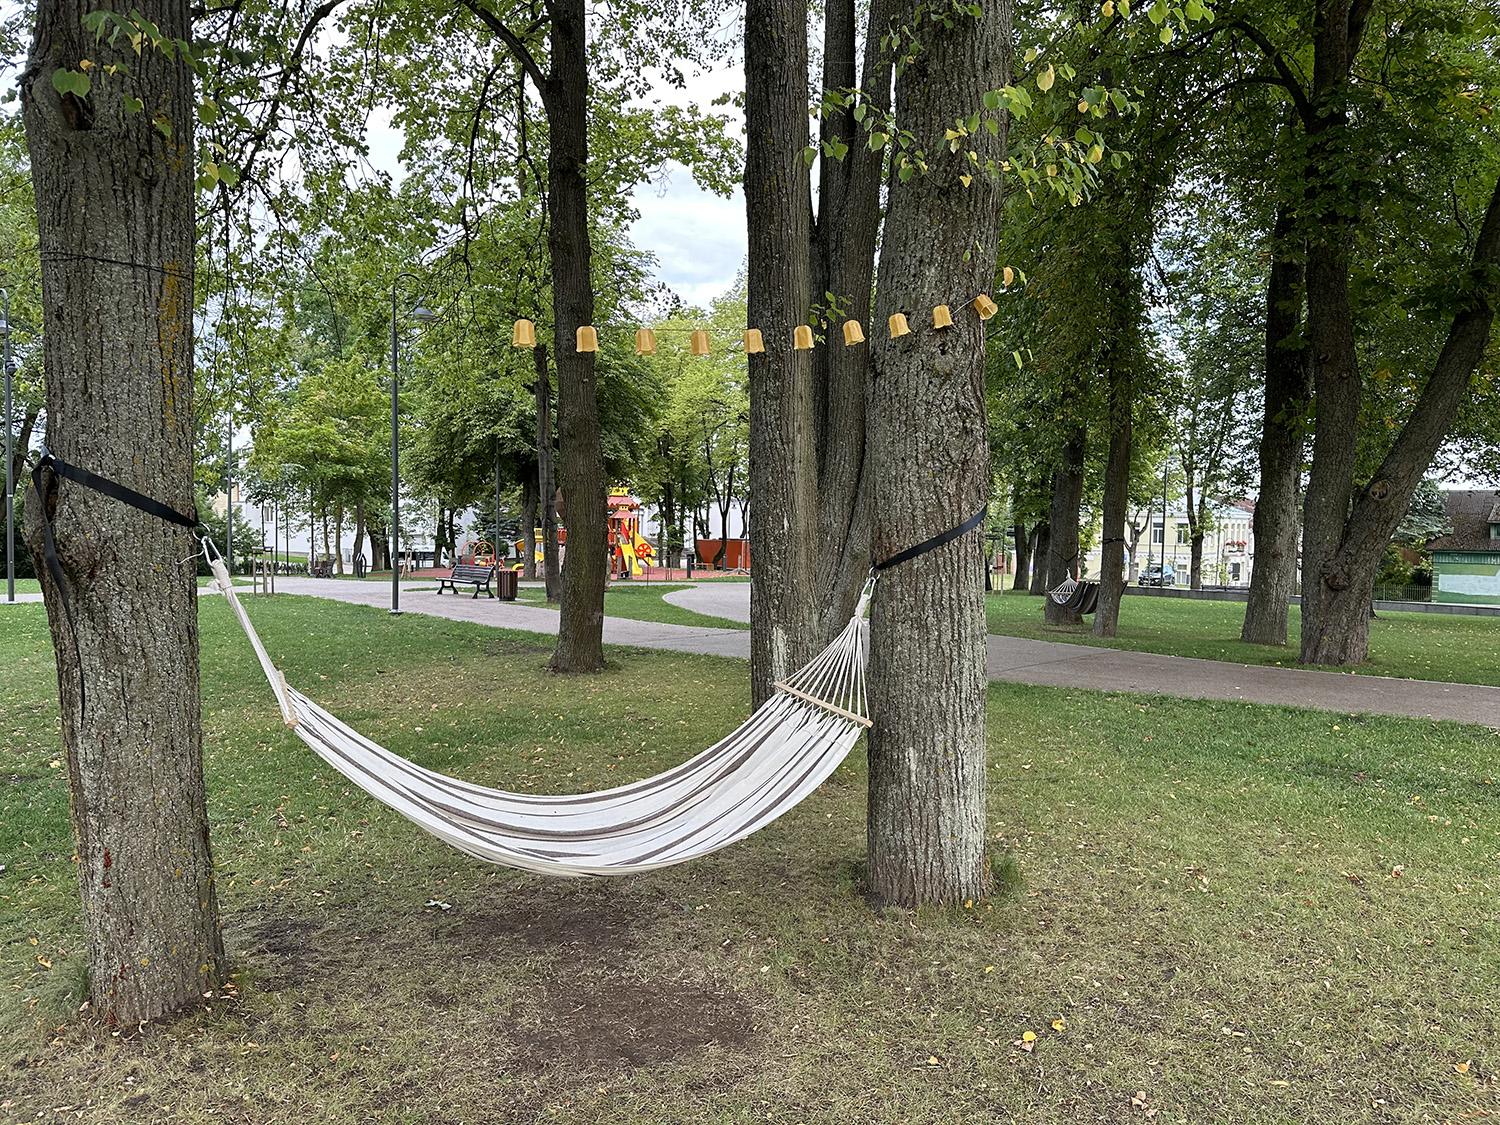 Praeivius kviečia prigulti ant hamakų / Skaistės Vasiliauskaitės-Dančenkovienės nuotr. Miesto parke galima pasisūpuoti hamake.